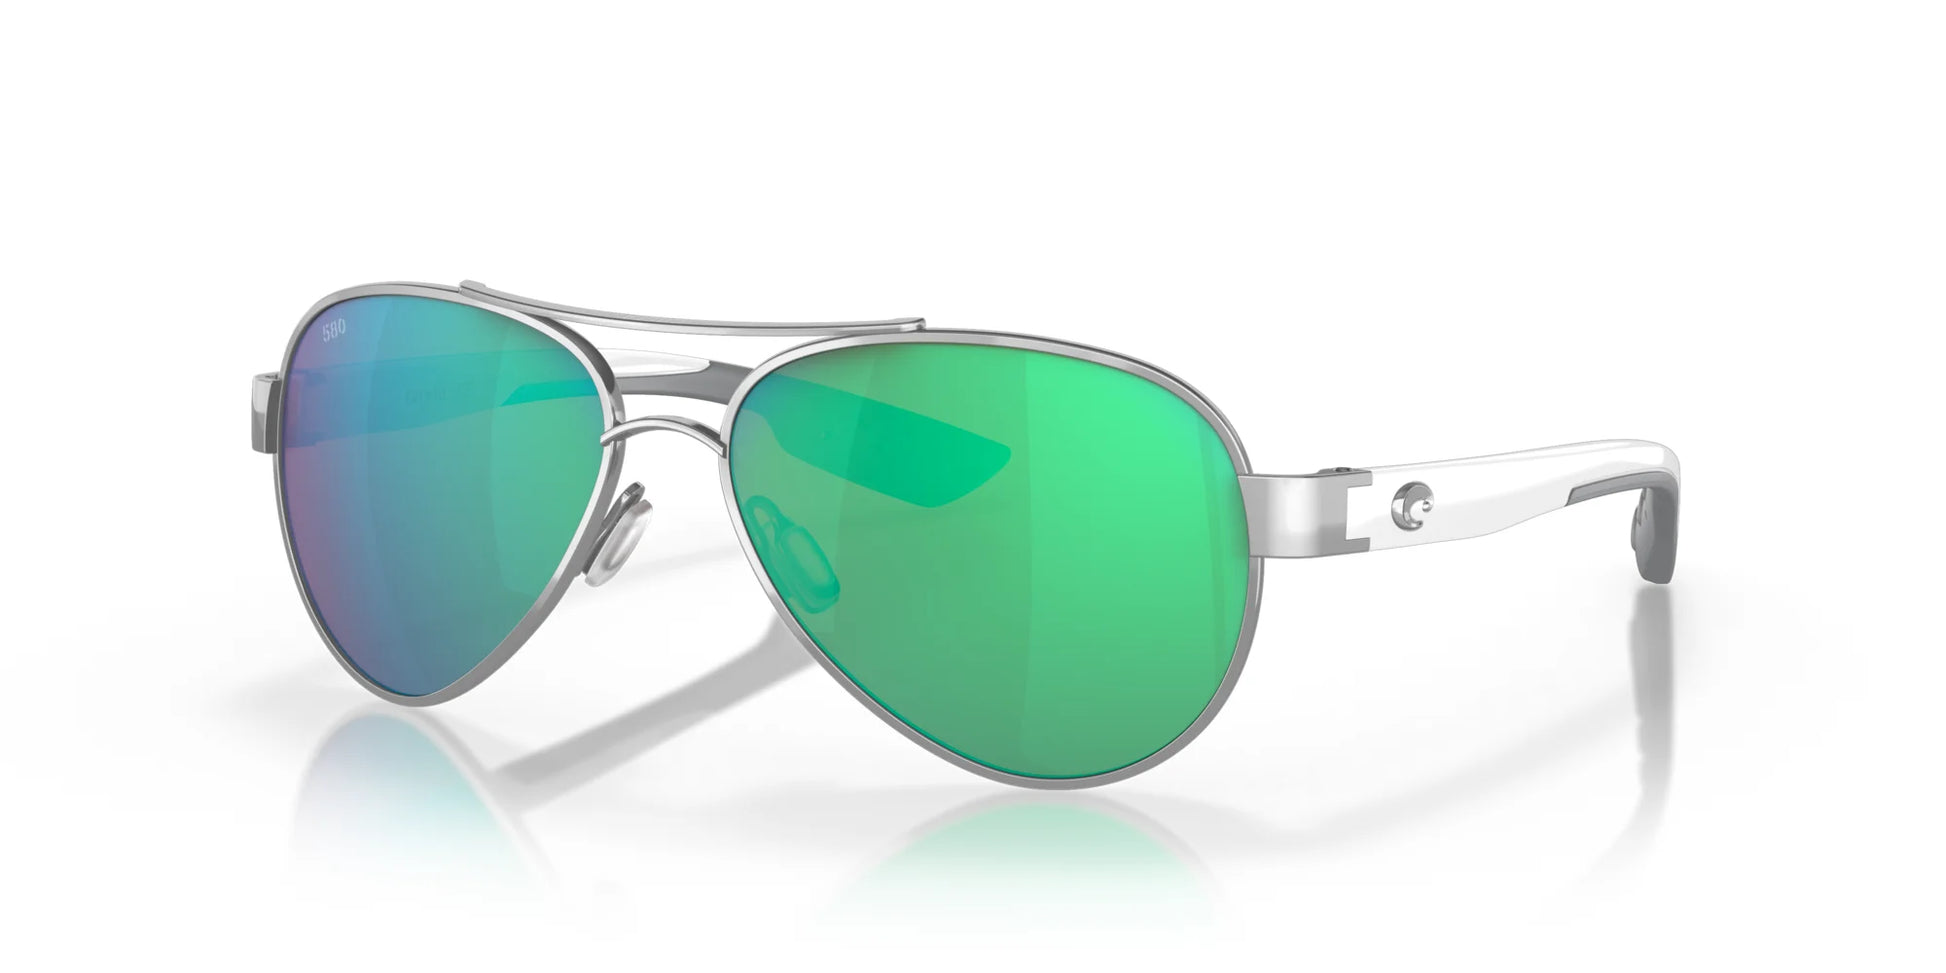 Costa LORETO 6S4006 Sunglasses Palladium / Green Mirror